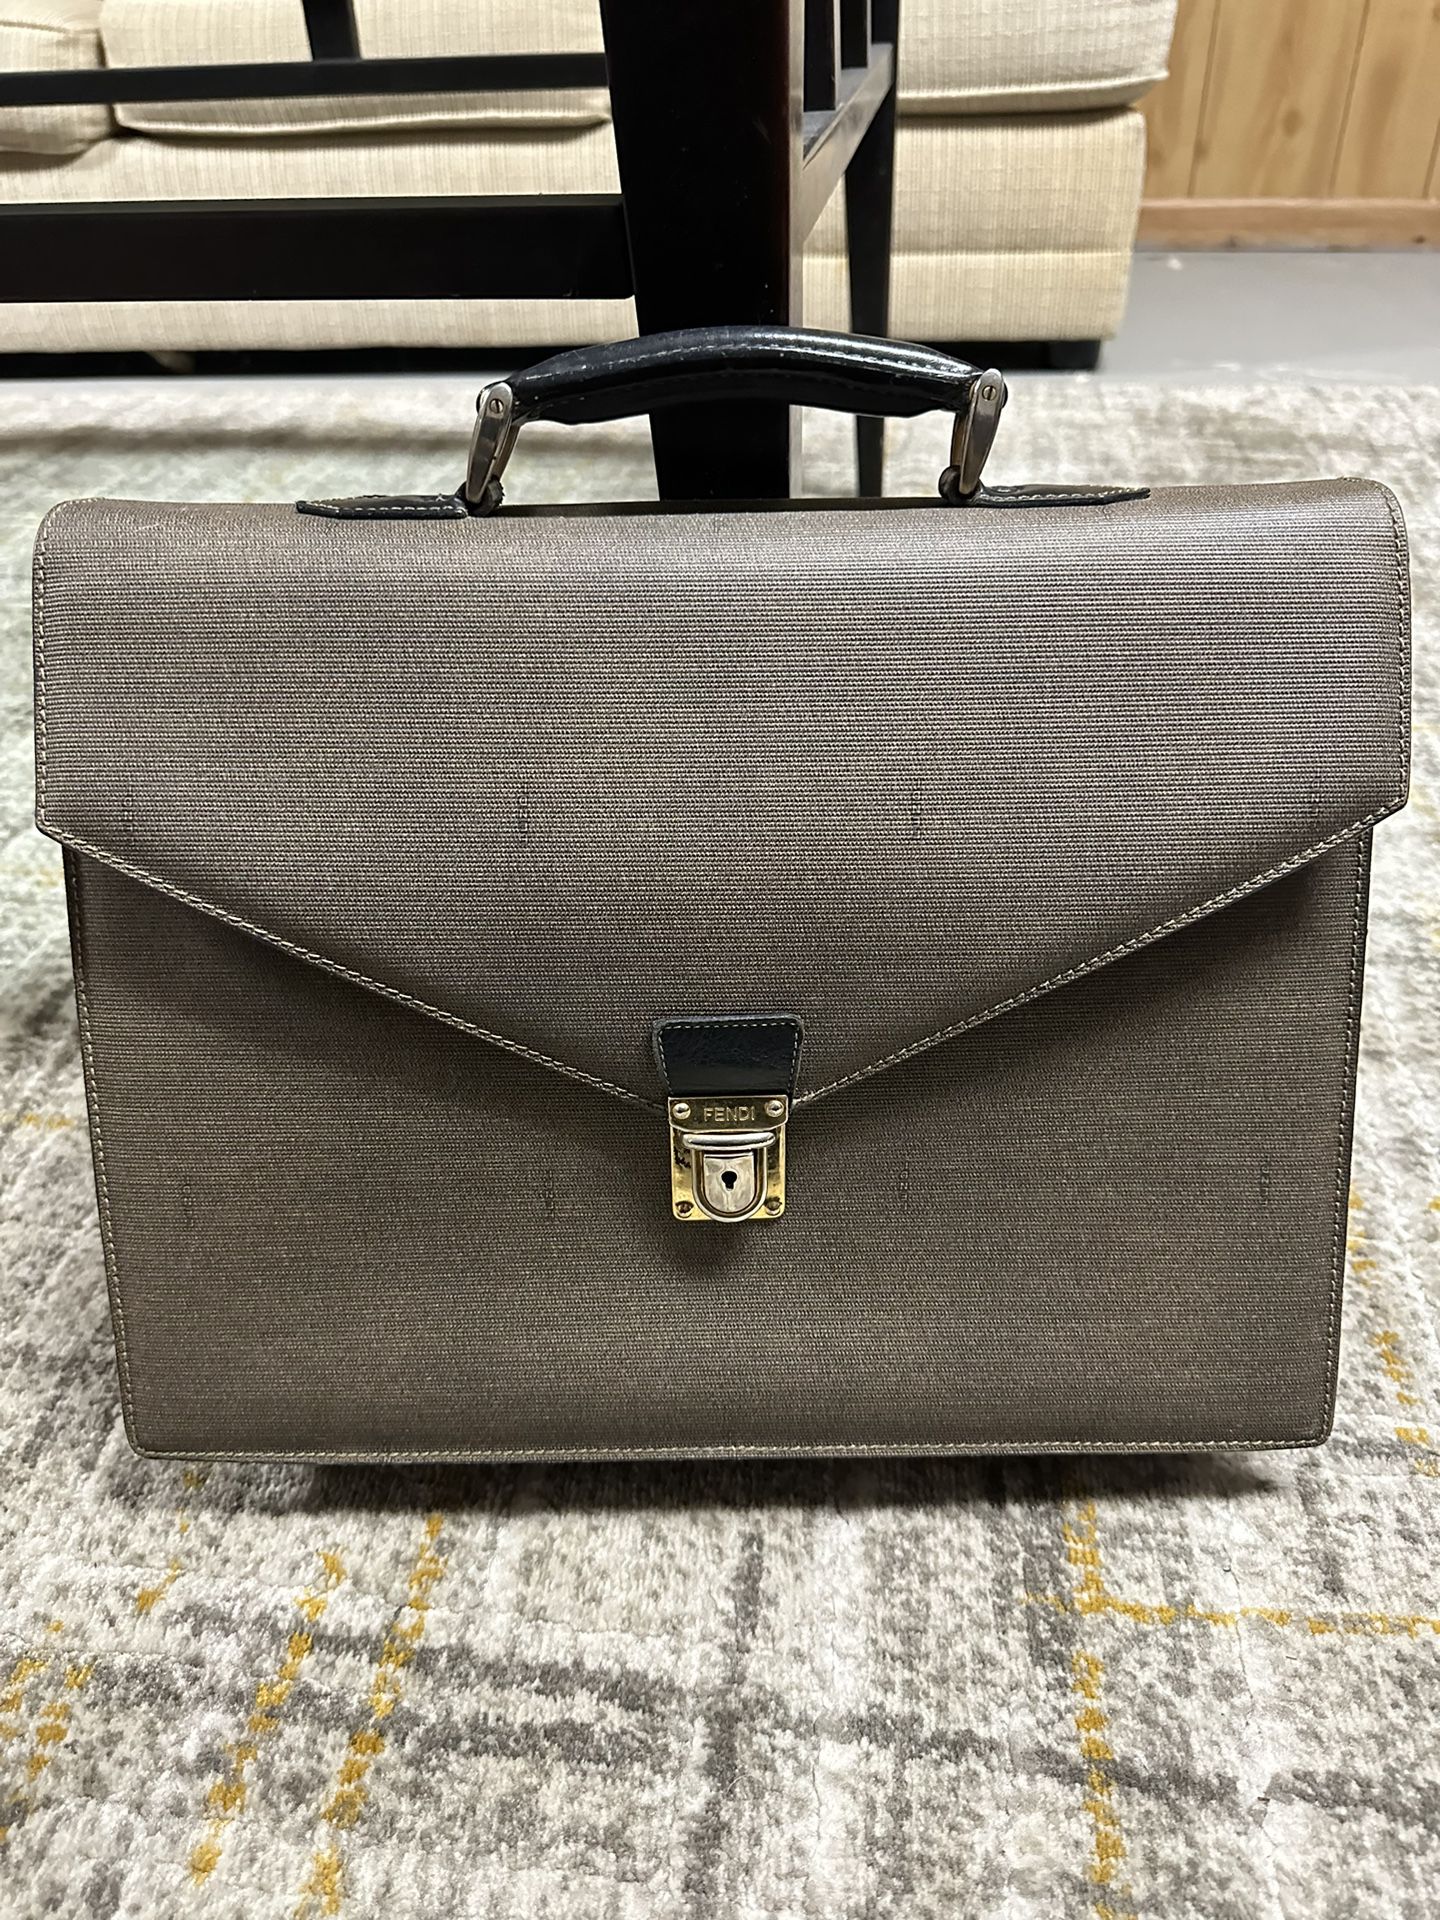 Authentic Fendi Bag Briefcase 